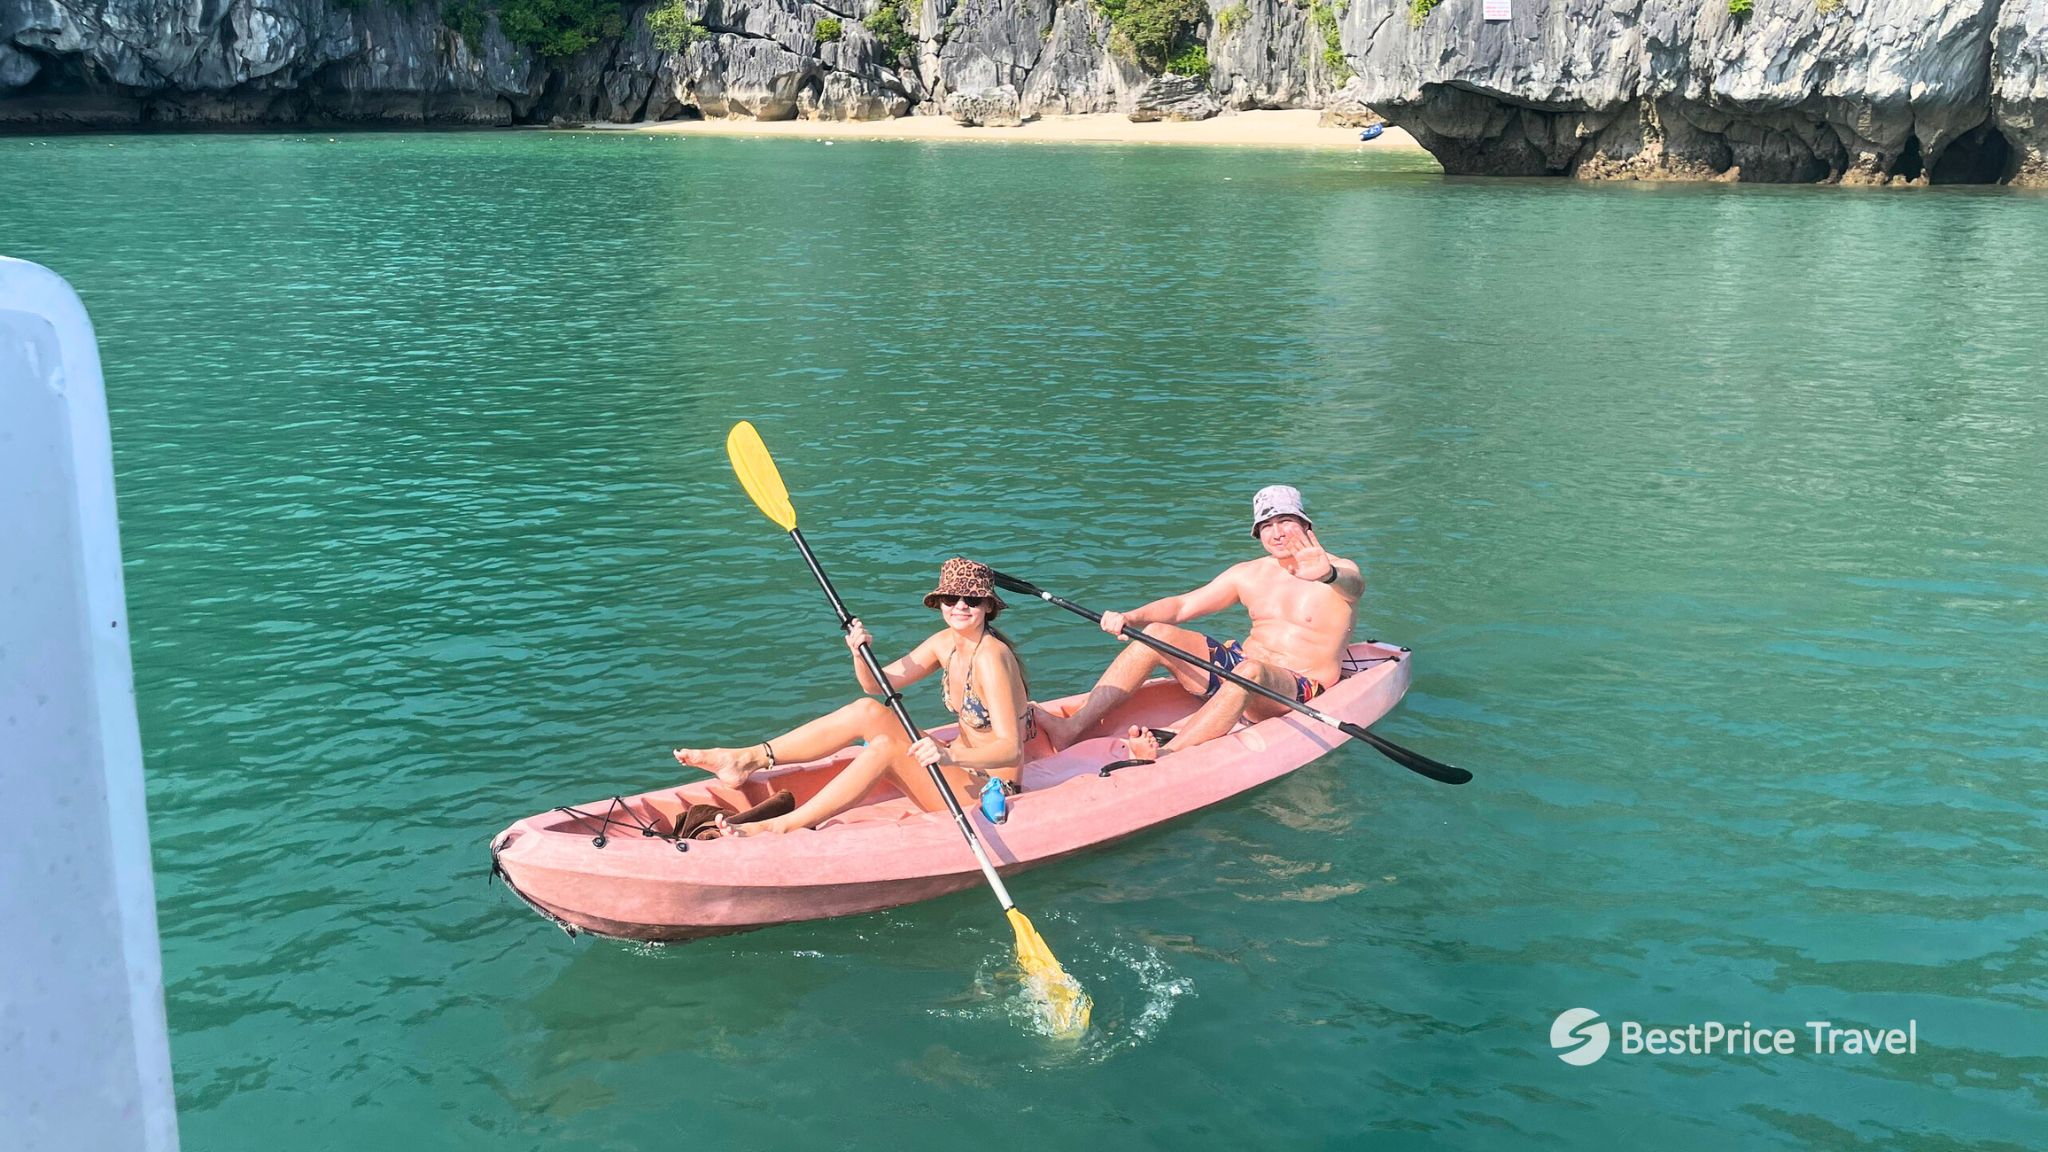 Day 6 Take A Exciting Kayaking Trip Through Halong Bay